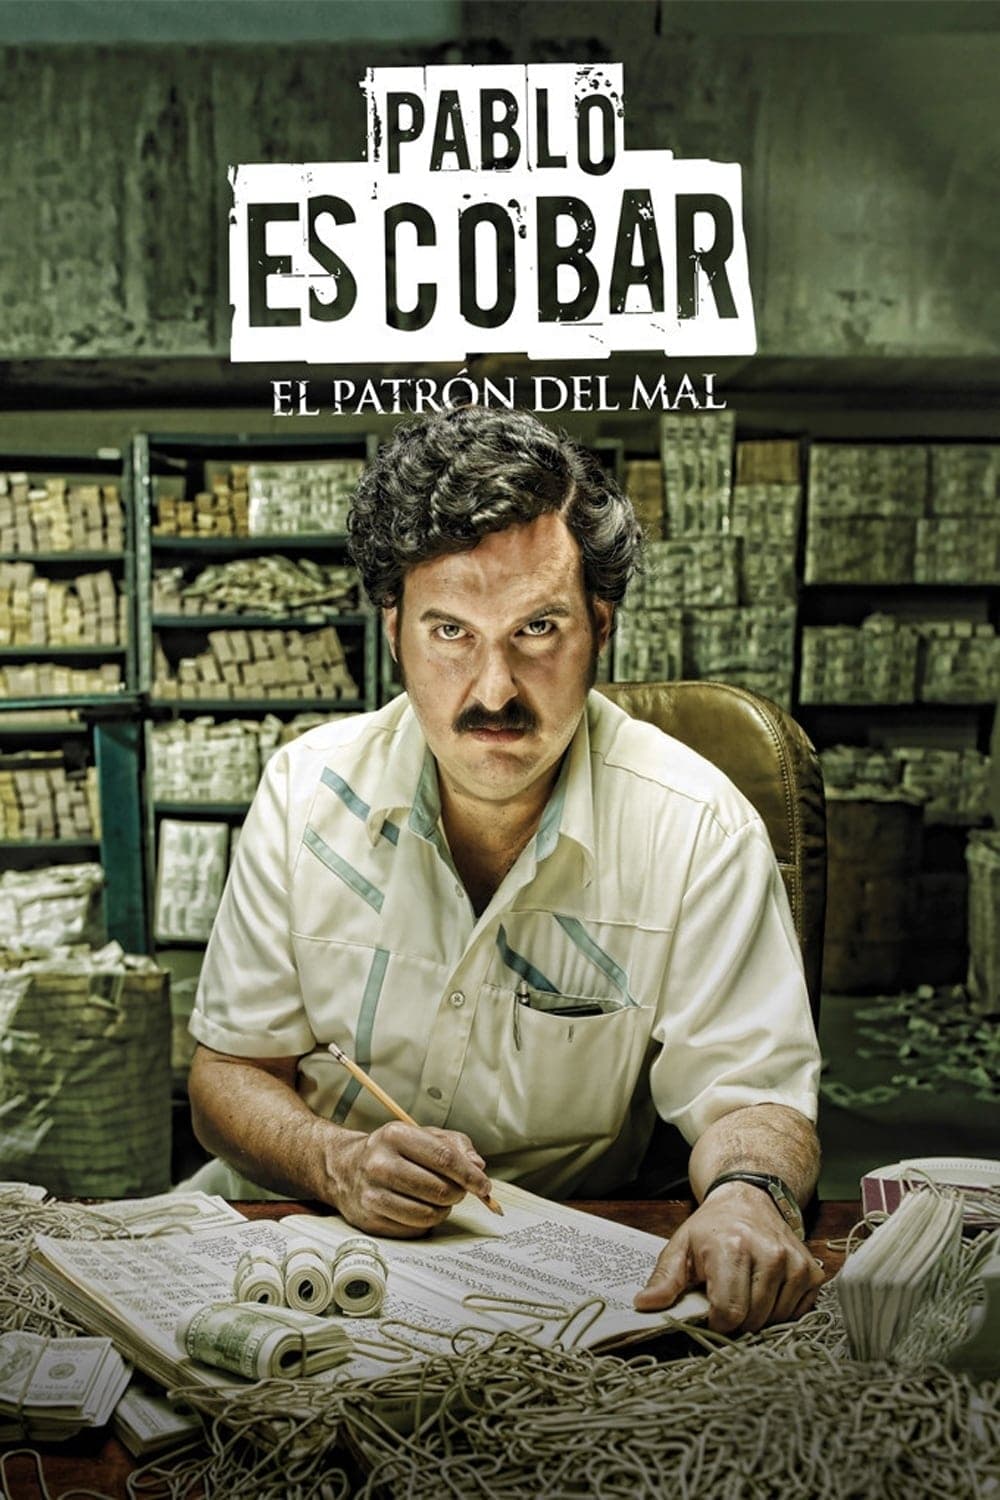 Pablo Escobar, el patrón del mal (2012)